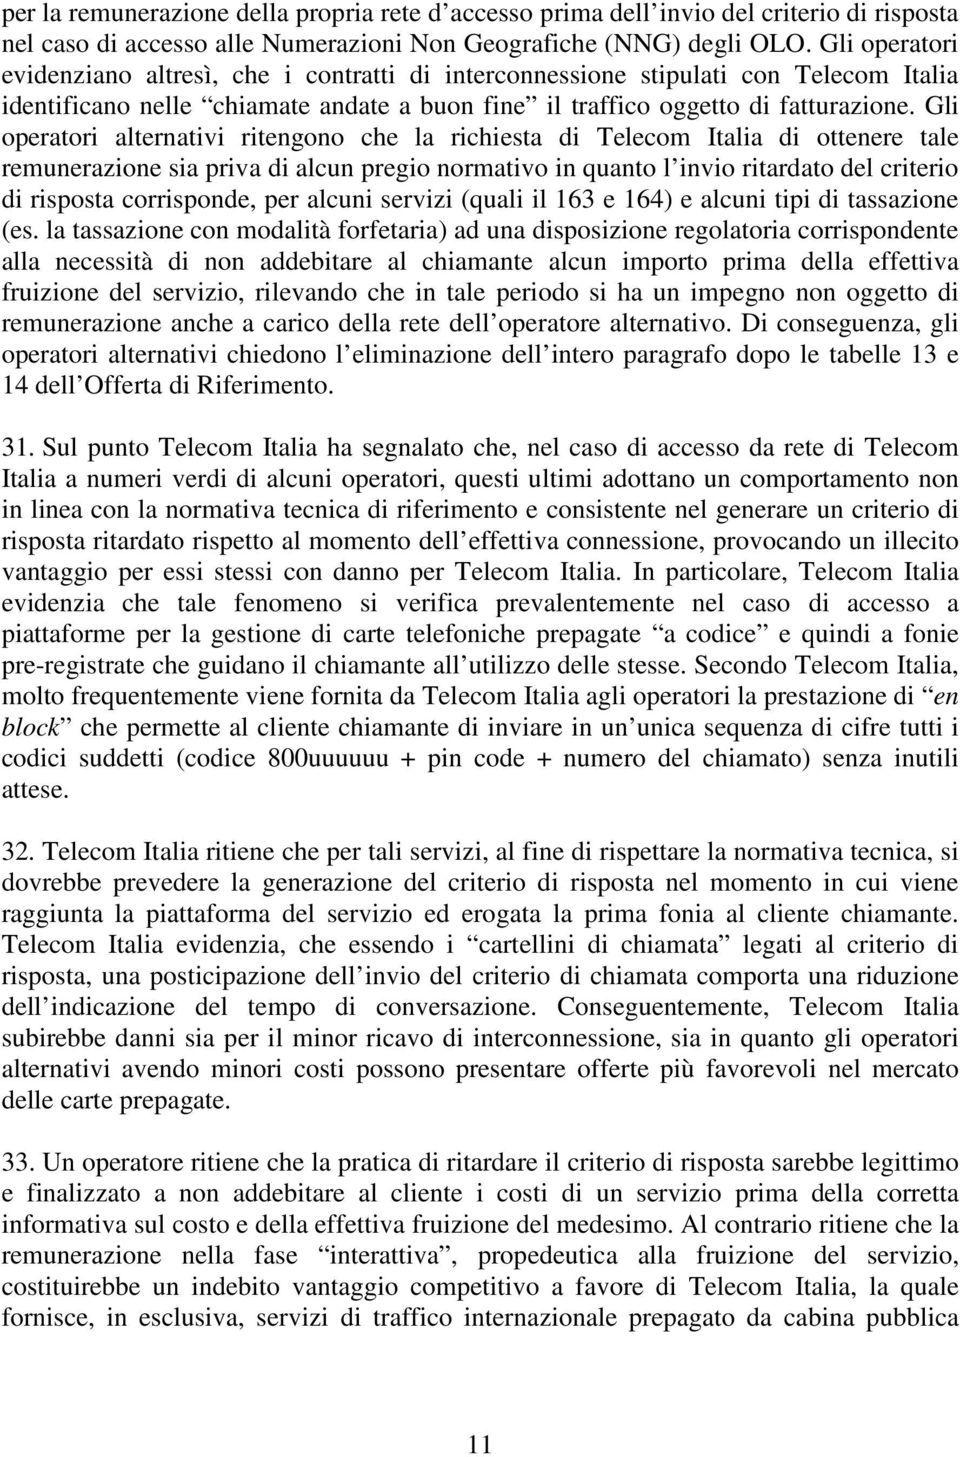 Gli operatori alternativi ritengono che la richiesta di Telecom Italia di ottenere tale remunerazione sia priva di alcun pregio normativo in quanto l invio ritardato del criterio di risposta